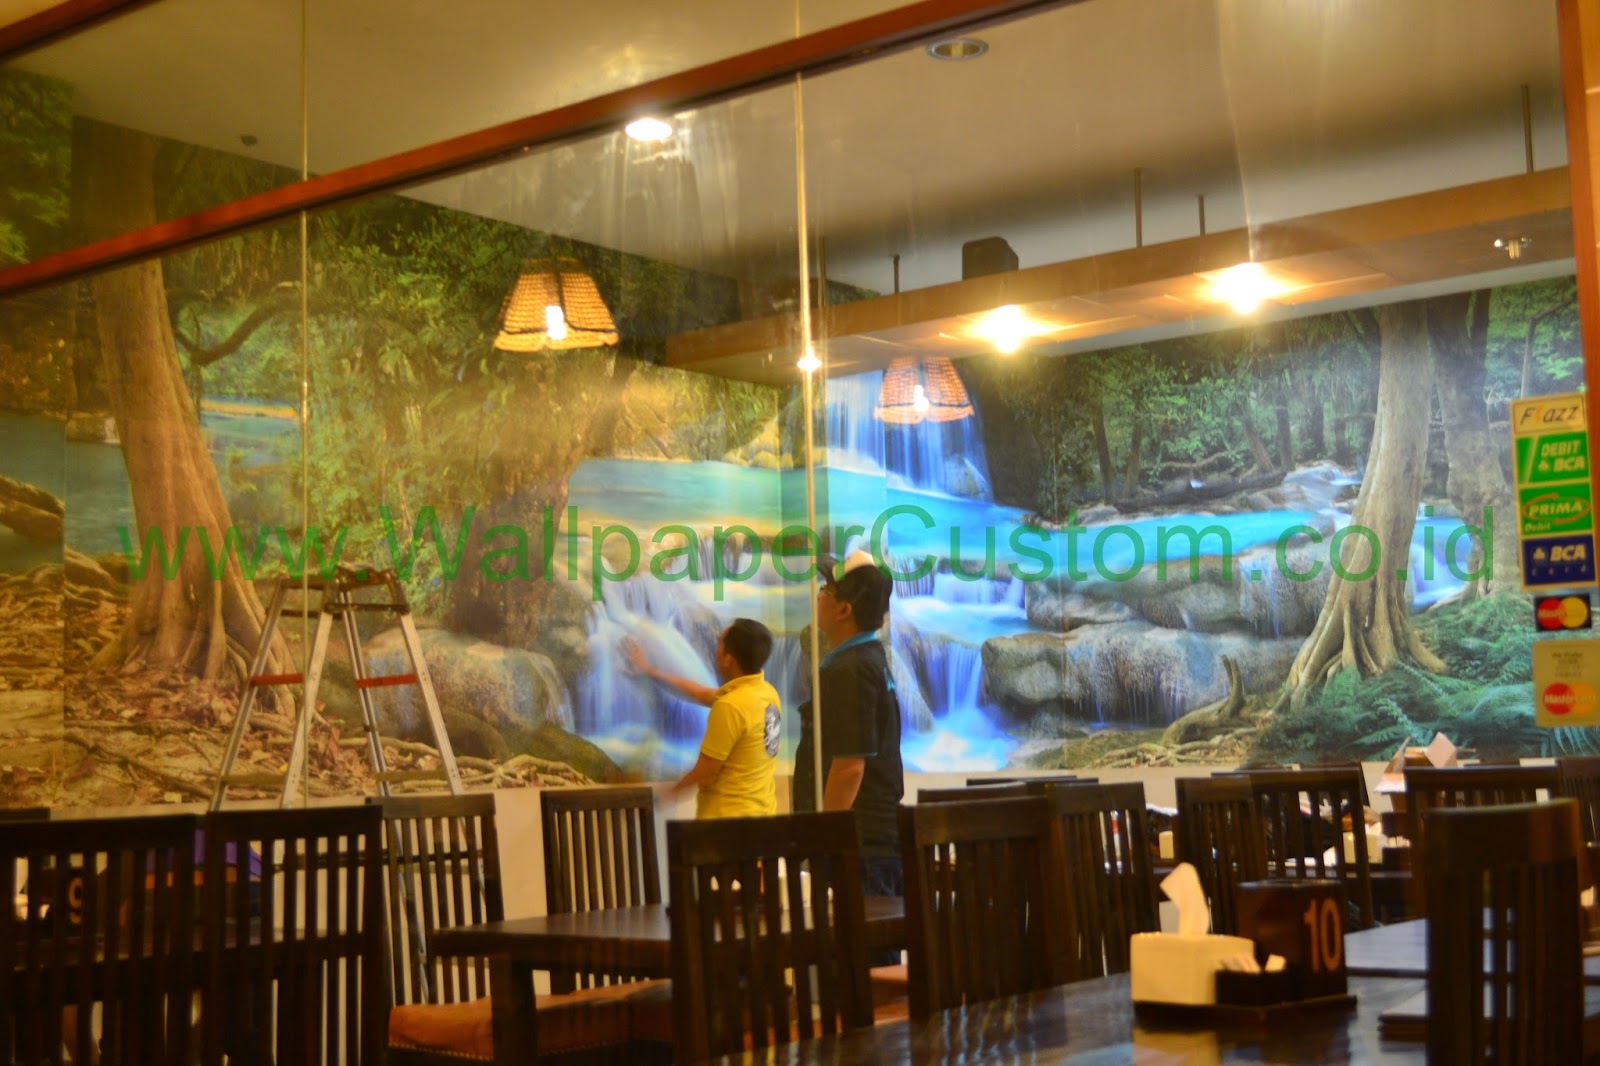 Jual wallpaper Dinding 3d Pemandangan alam di jakarta 